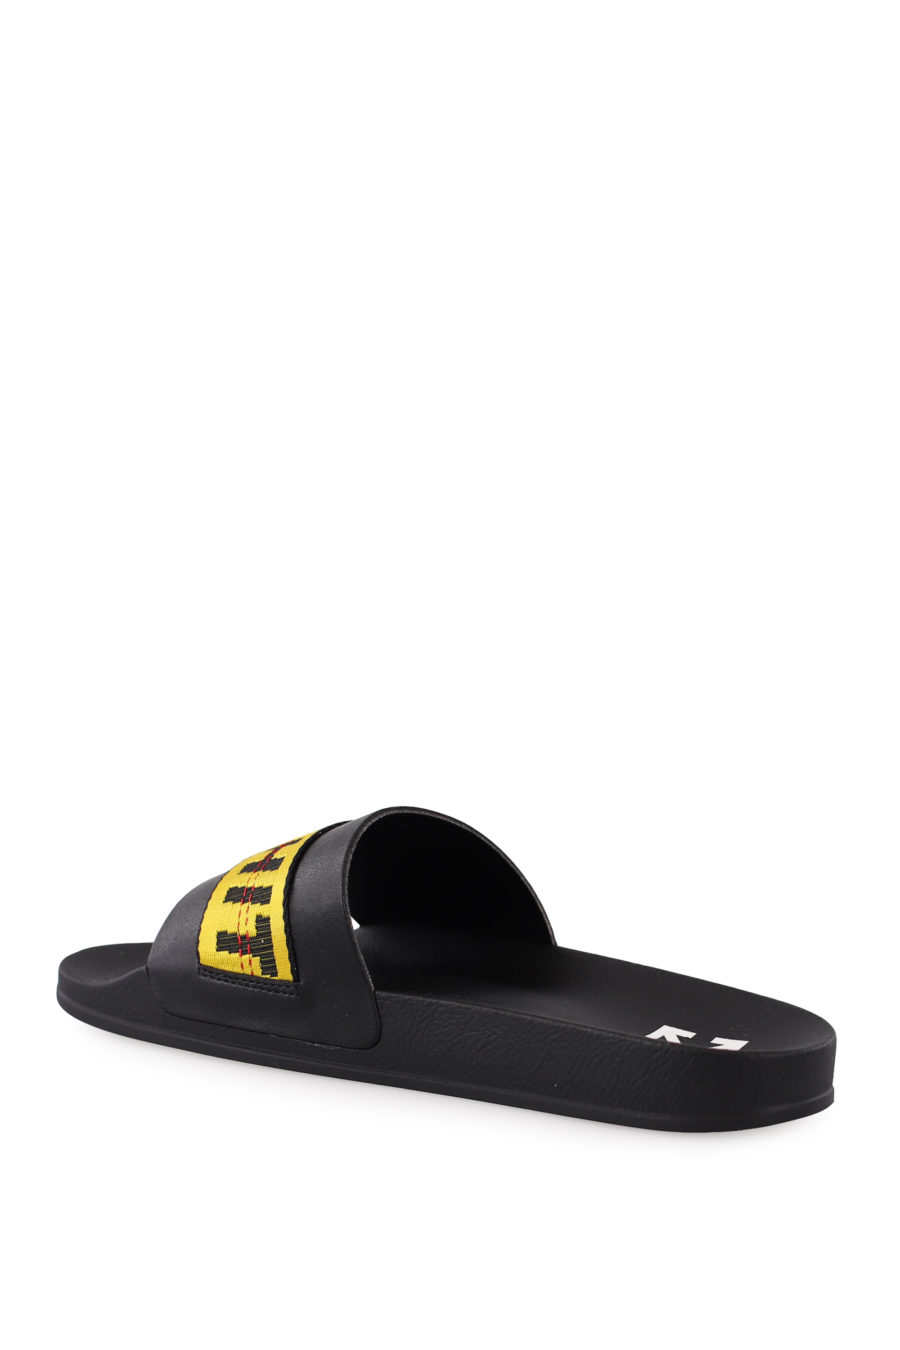 Chanclas negra con logo en cinta amarilla - IMG 9045